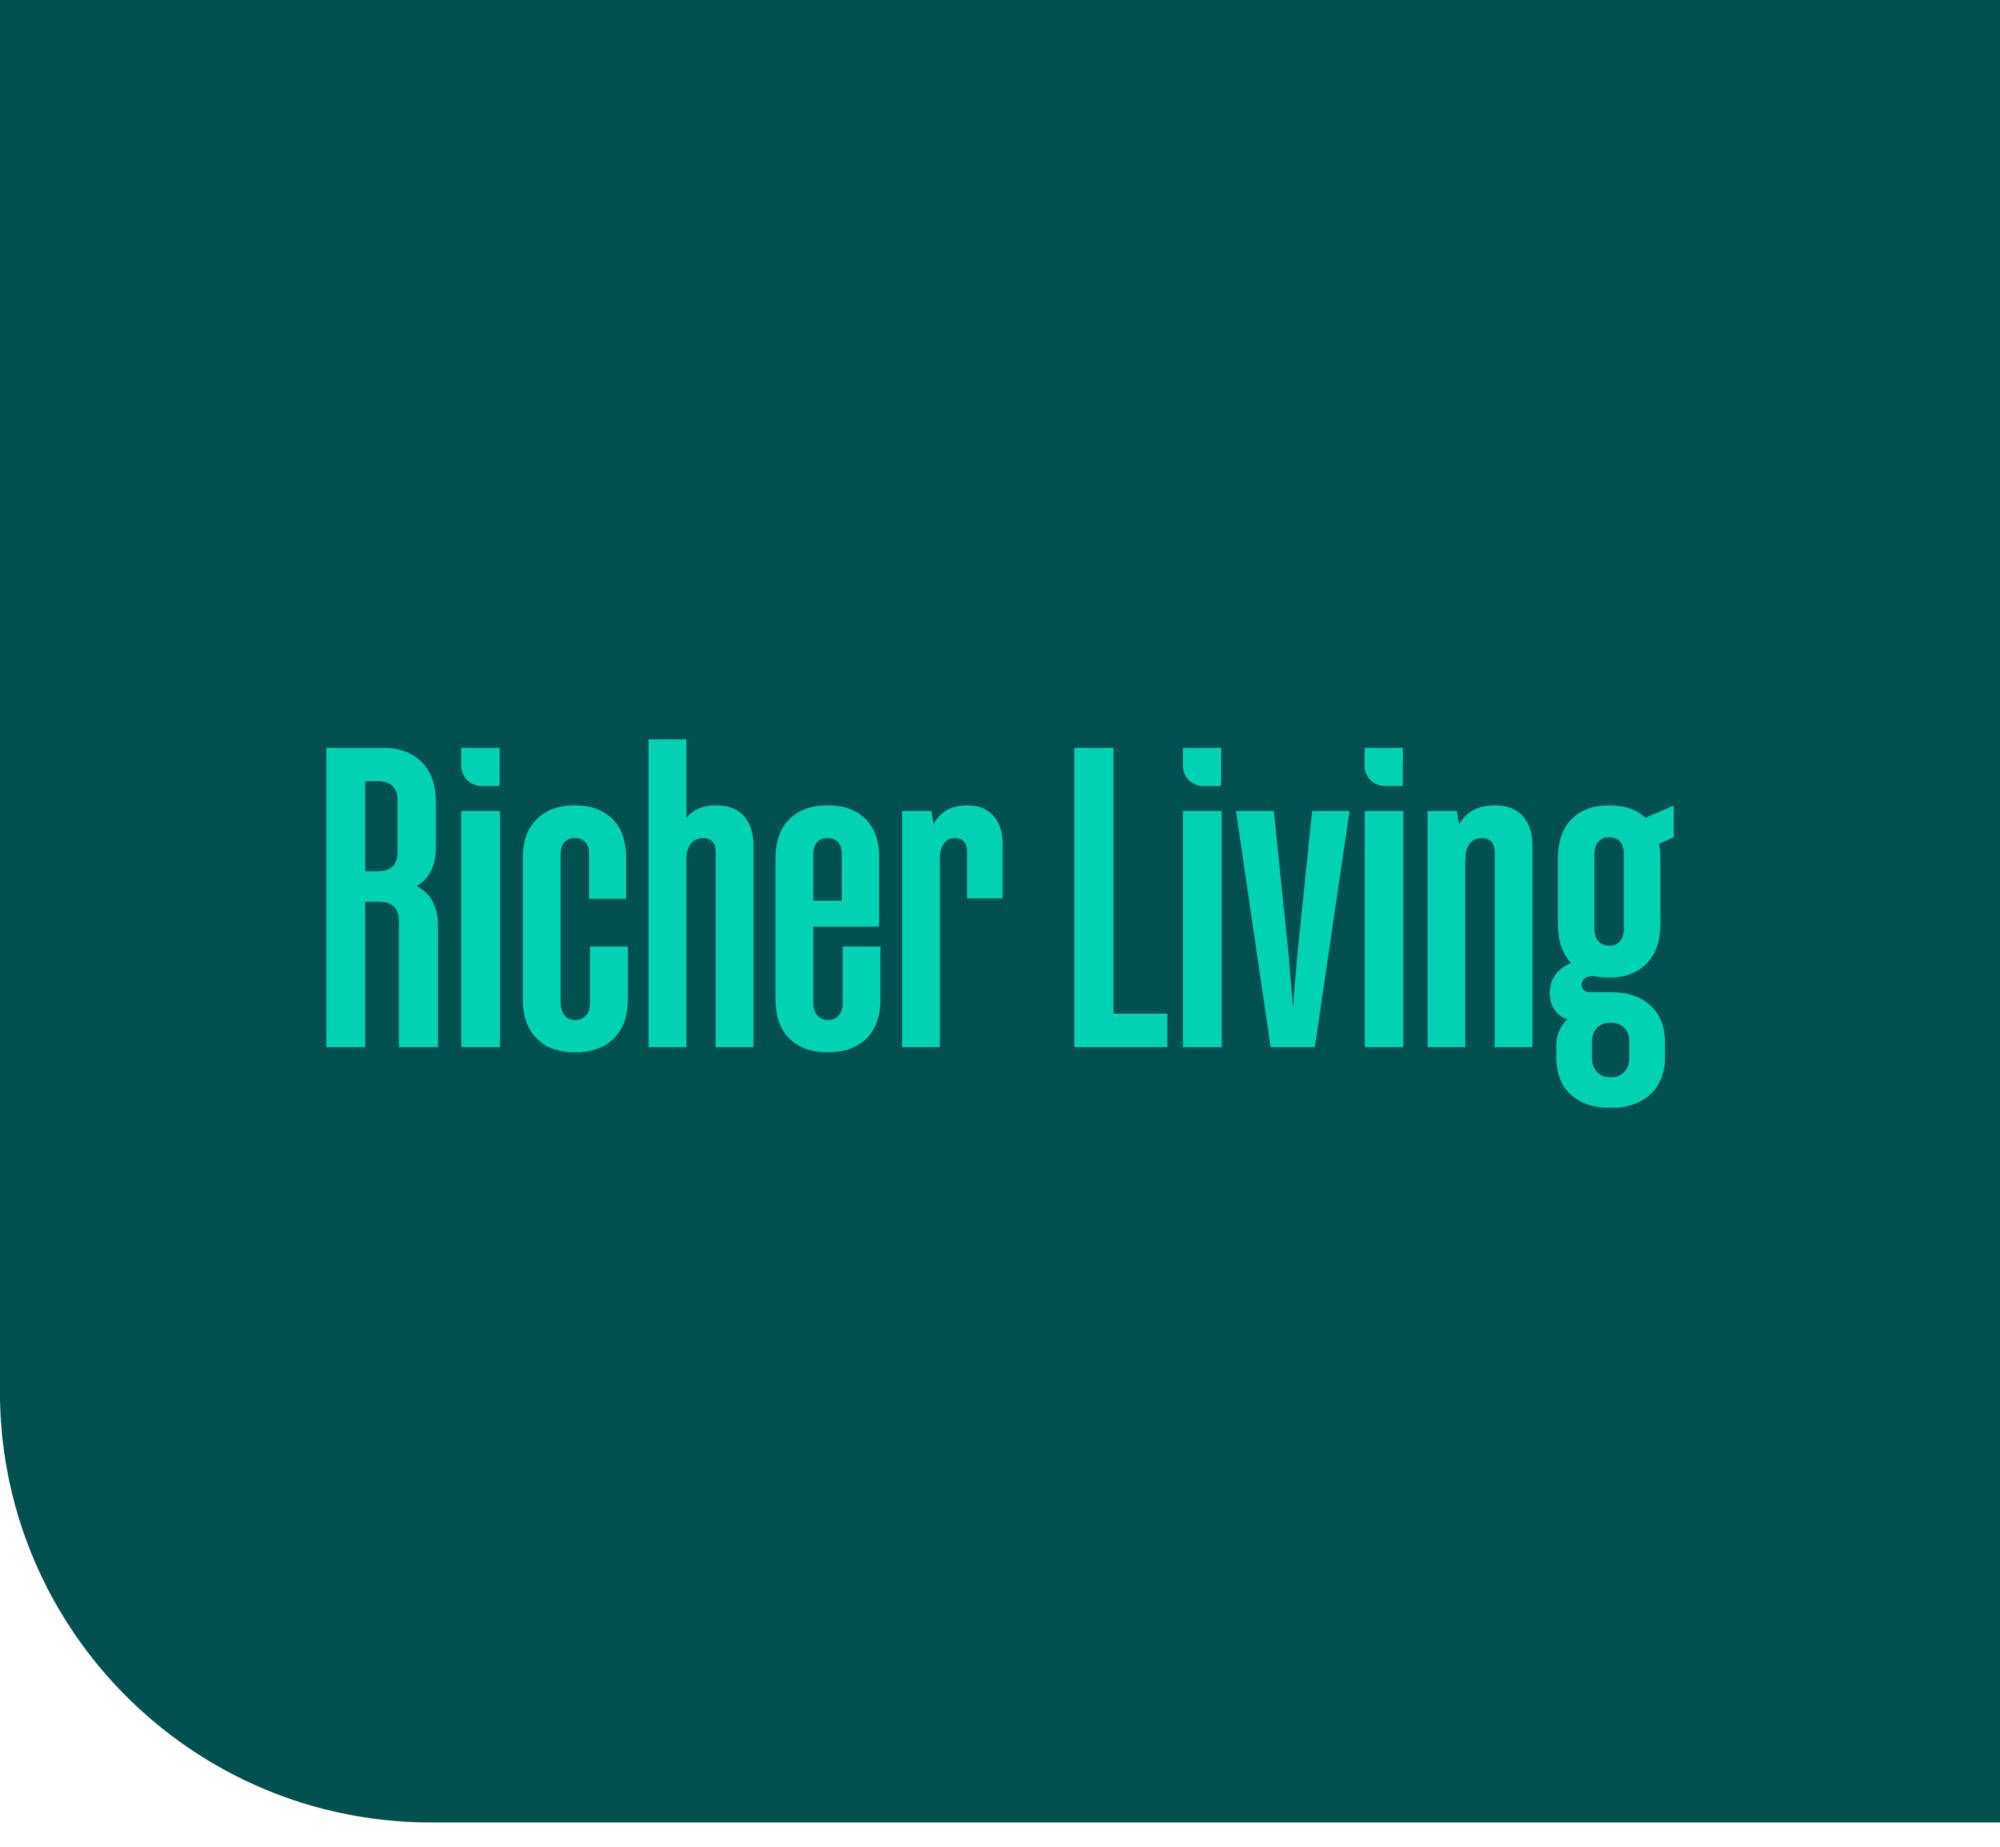 brand promise richer living based on rebranding strategy